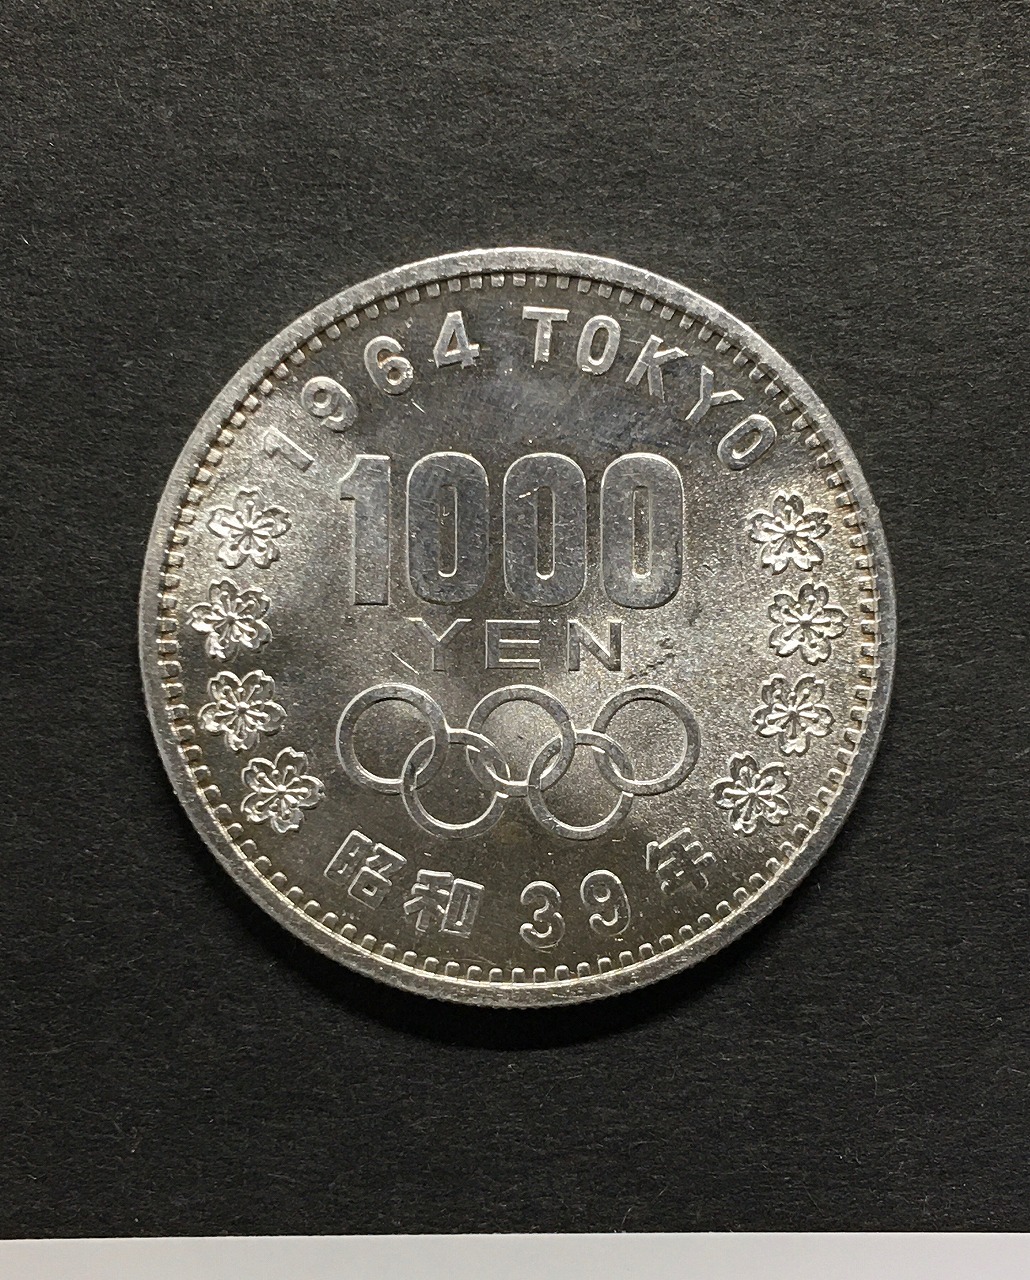 1000円オリンピック記念 東京五輪記念銀貨 1964年(S39) 美品-3296